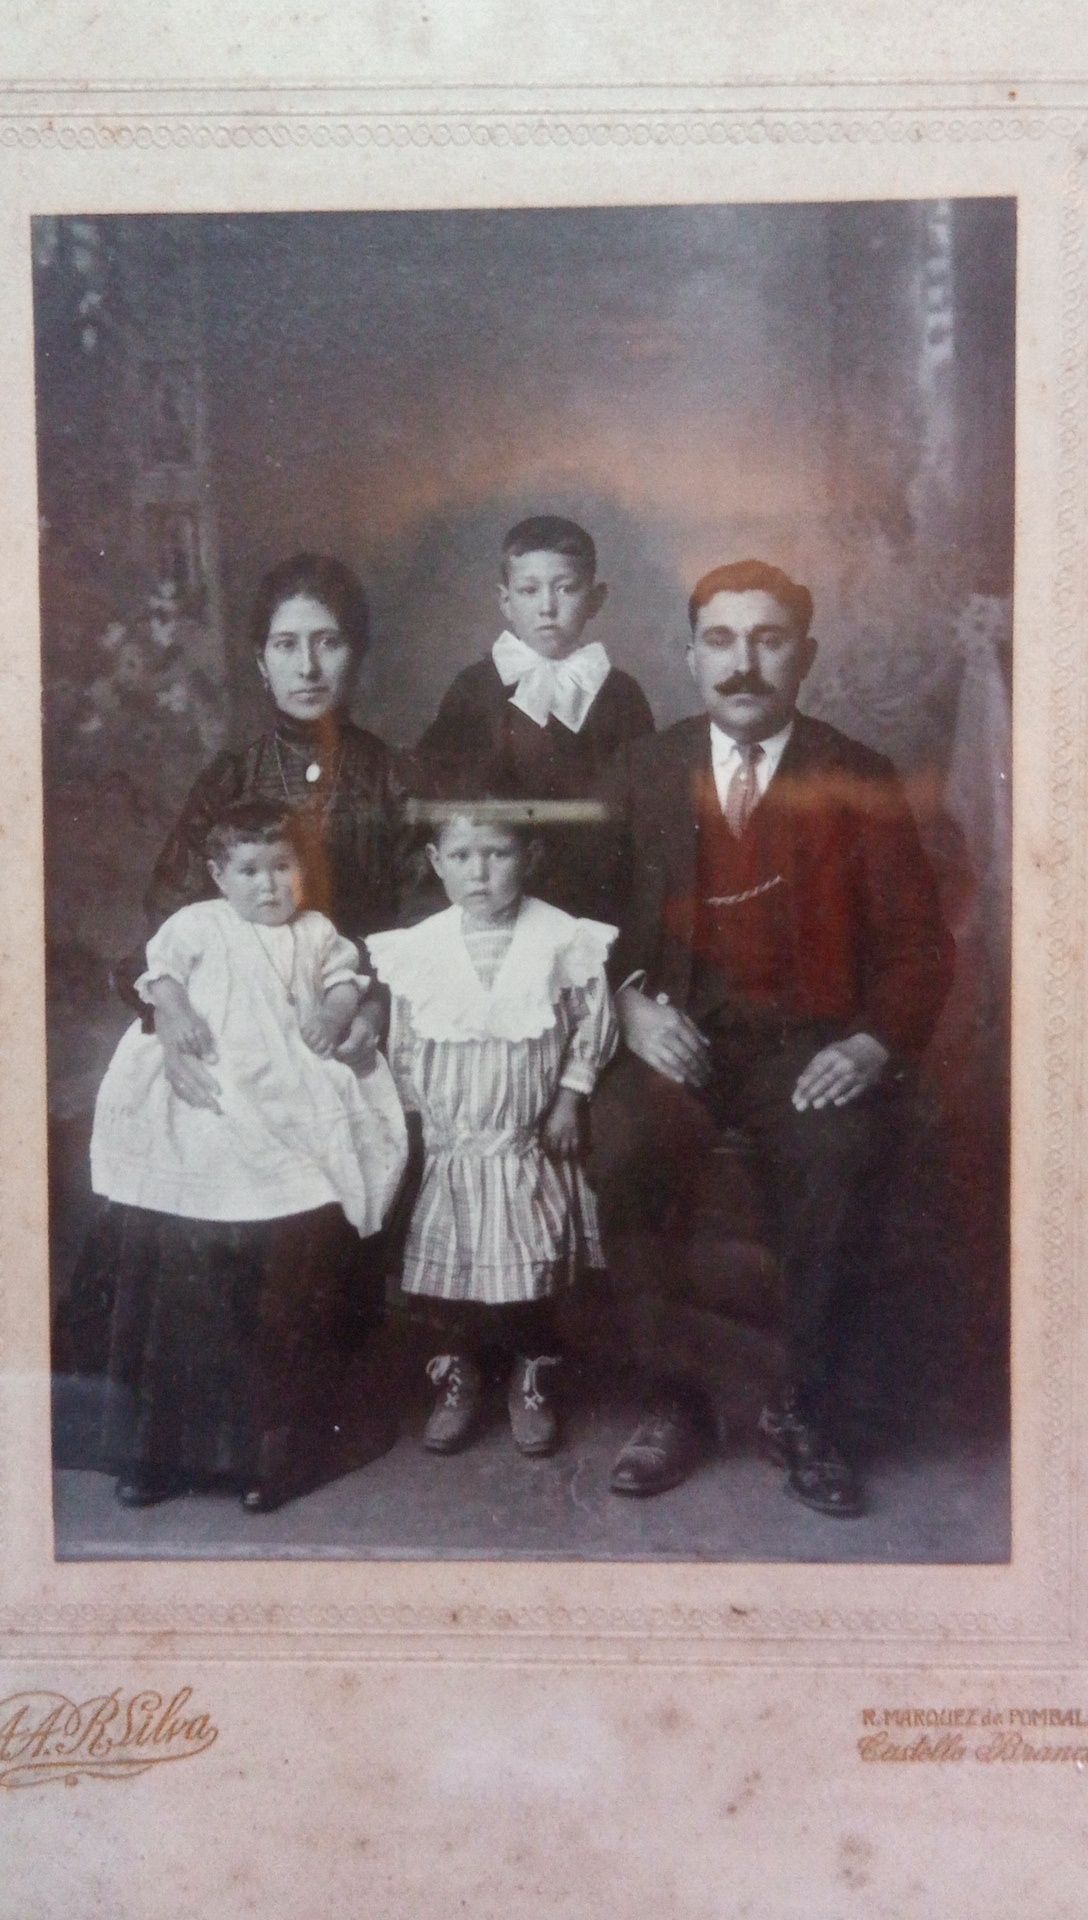 Moldura com foto antiga cerca de 100 anos